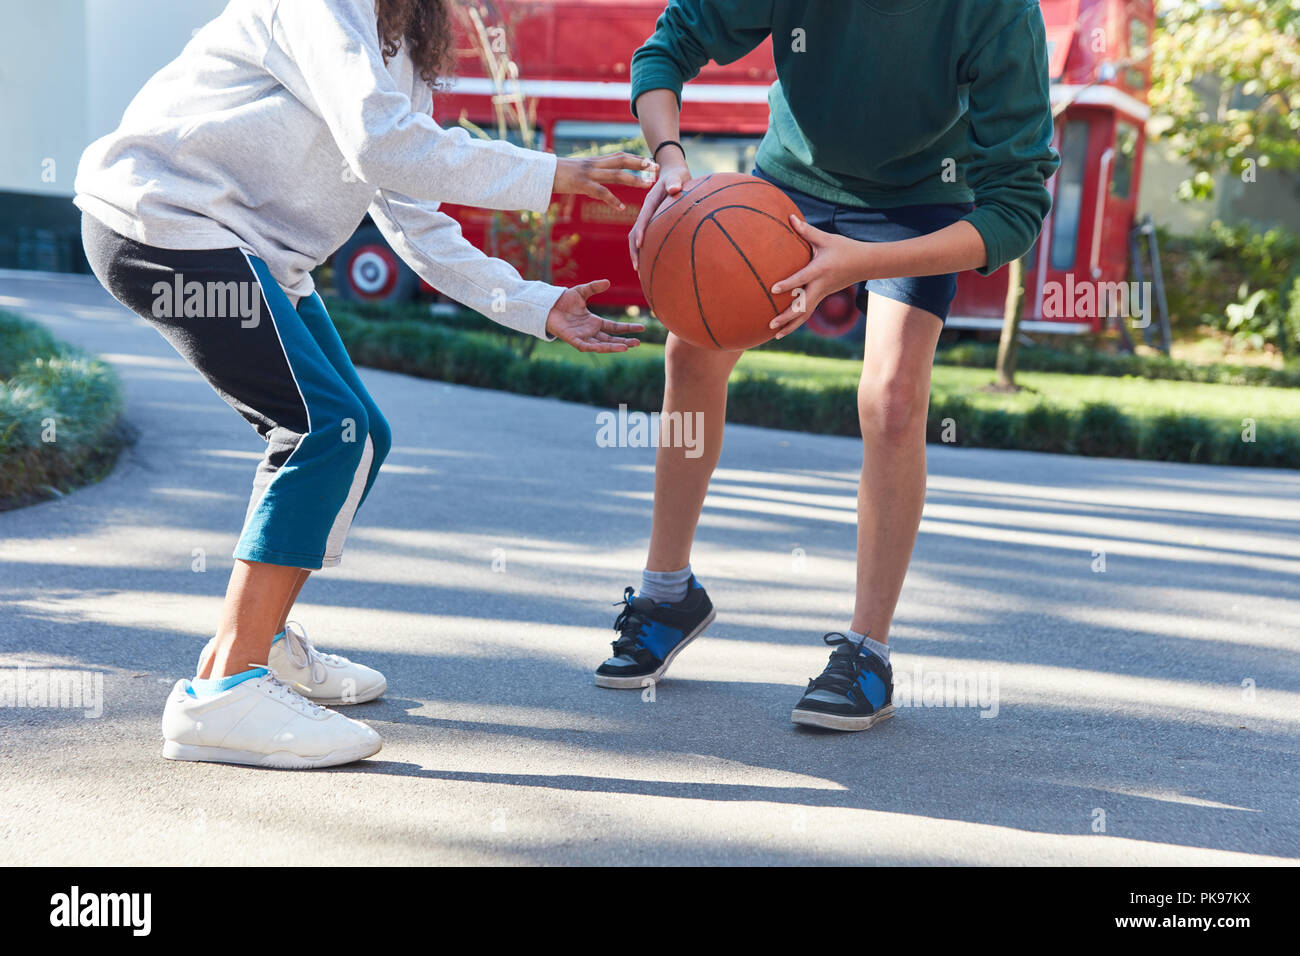 Kinder spielen Basketball Summer Camp oder in der Schule Spielplatz Stockfoto